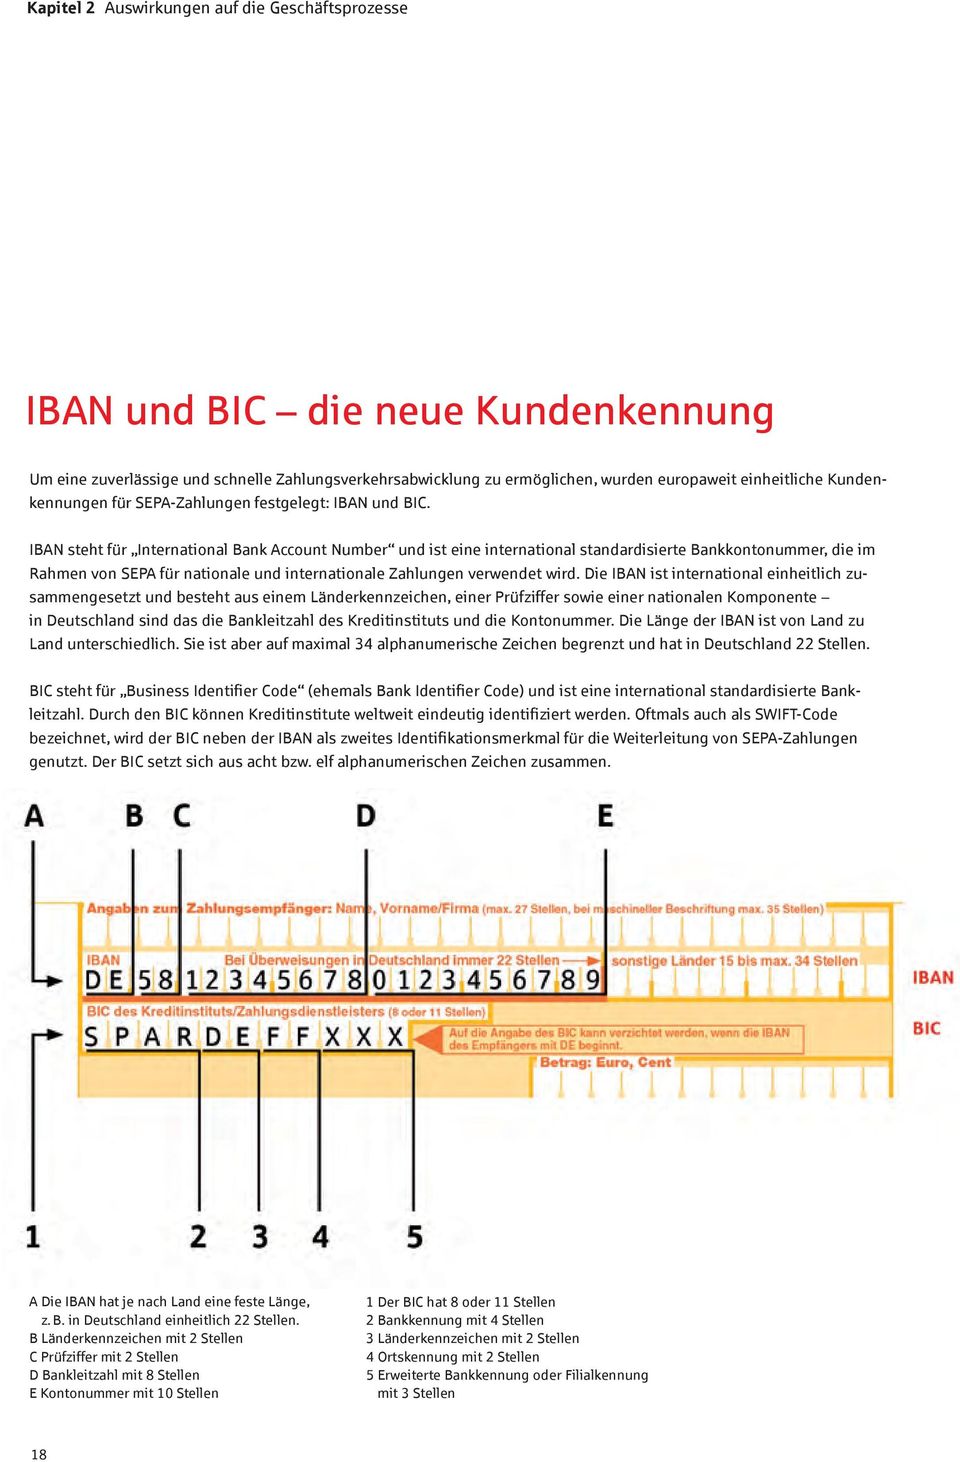 IBAN steht für International Bank Account Number und ist eine international standardisierte Bankkontonummer, die im Rahmen von SEPA für nationale und internationale Zahlungen verwendet wird.